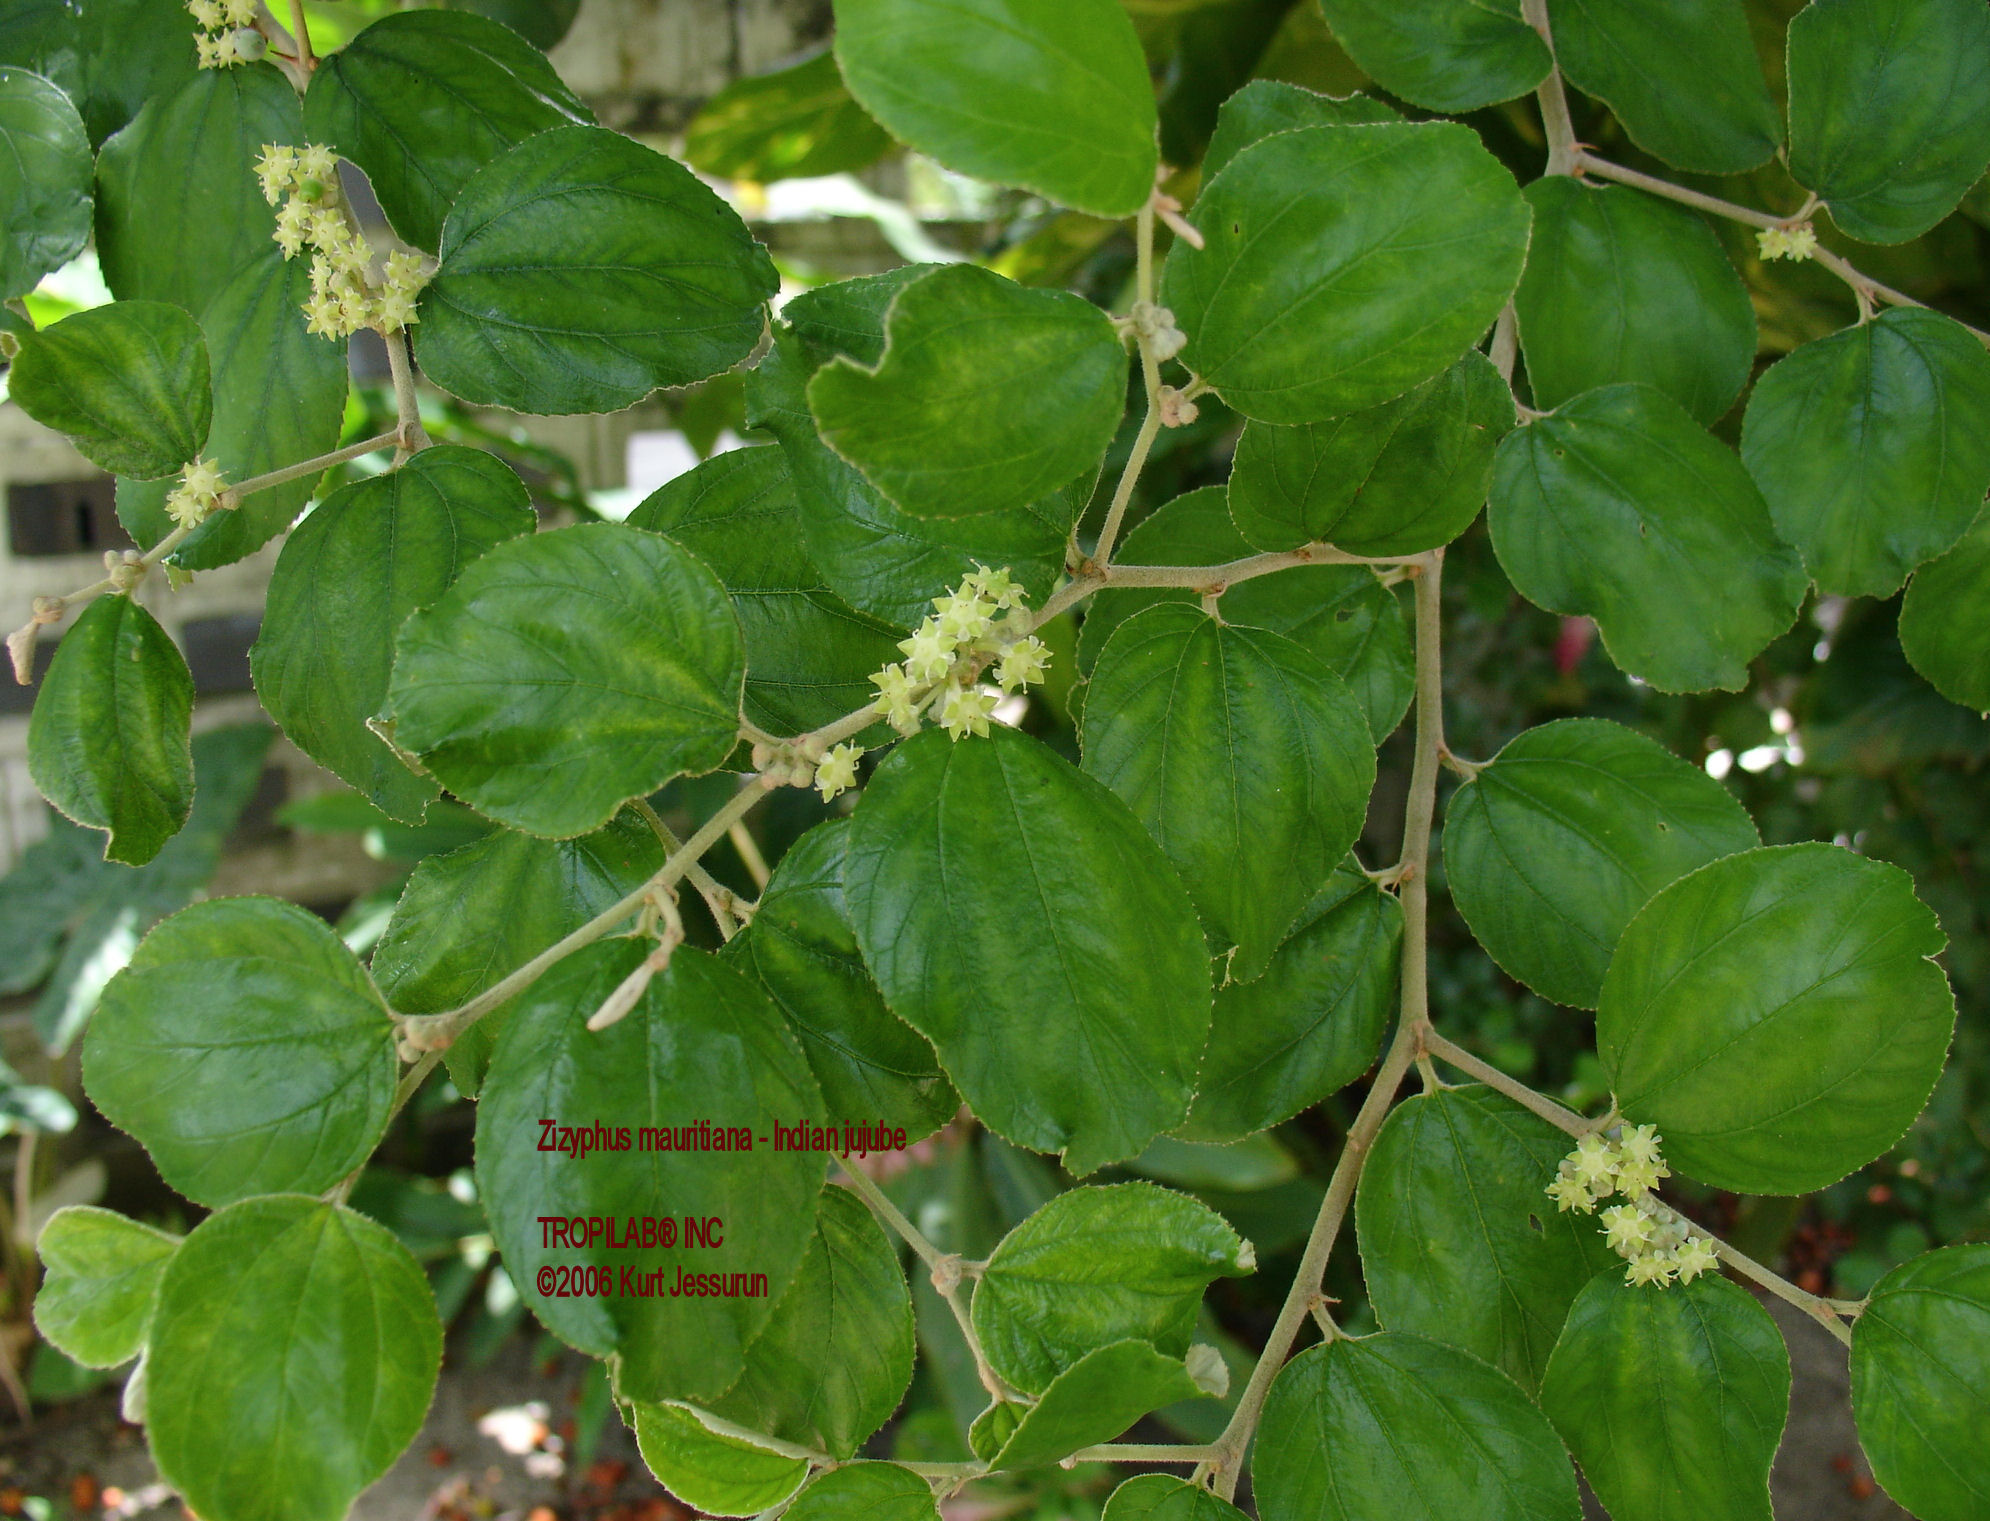 Zizyphus mauritiana - Indian jujube leaves